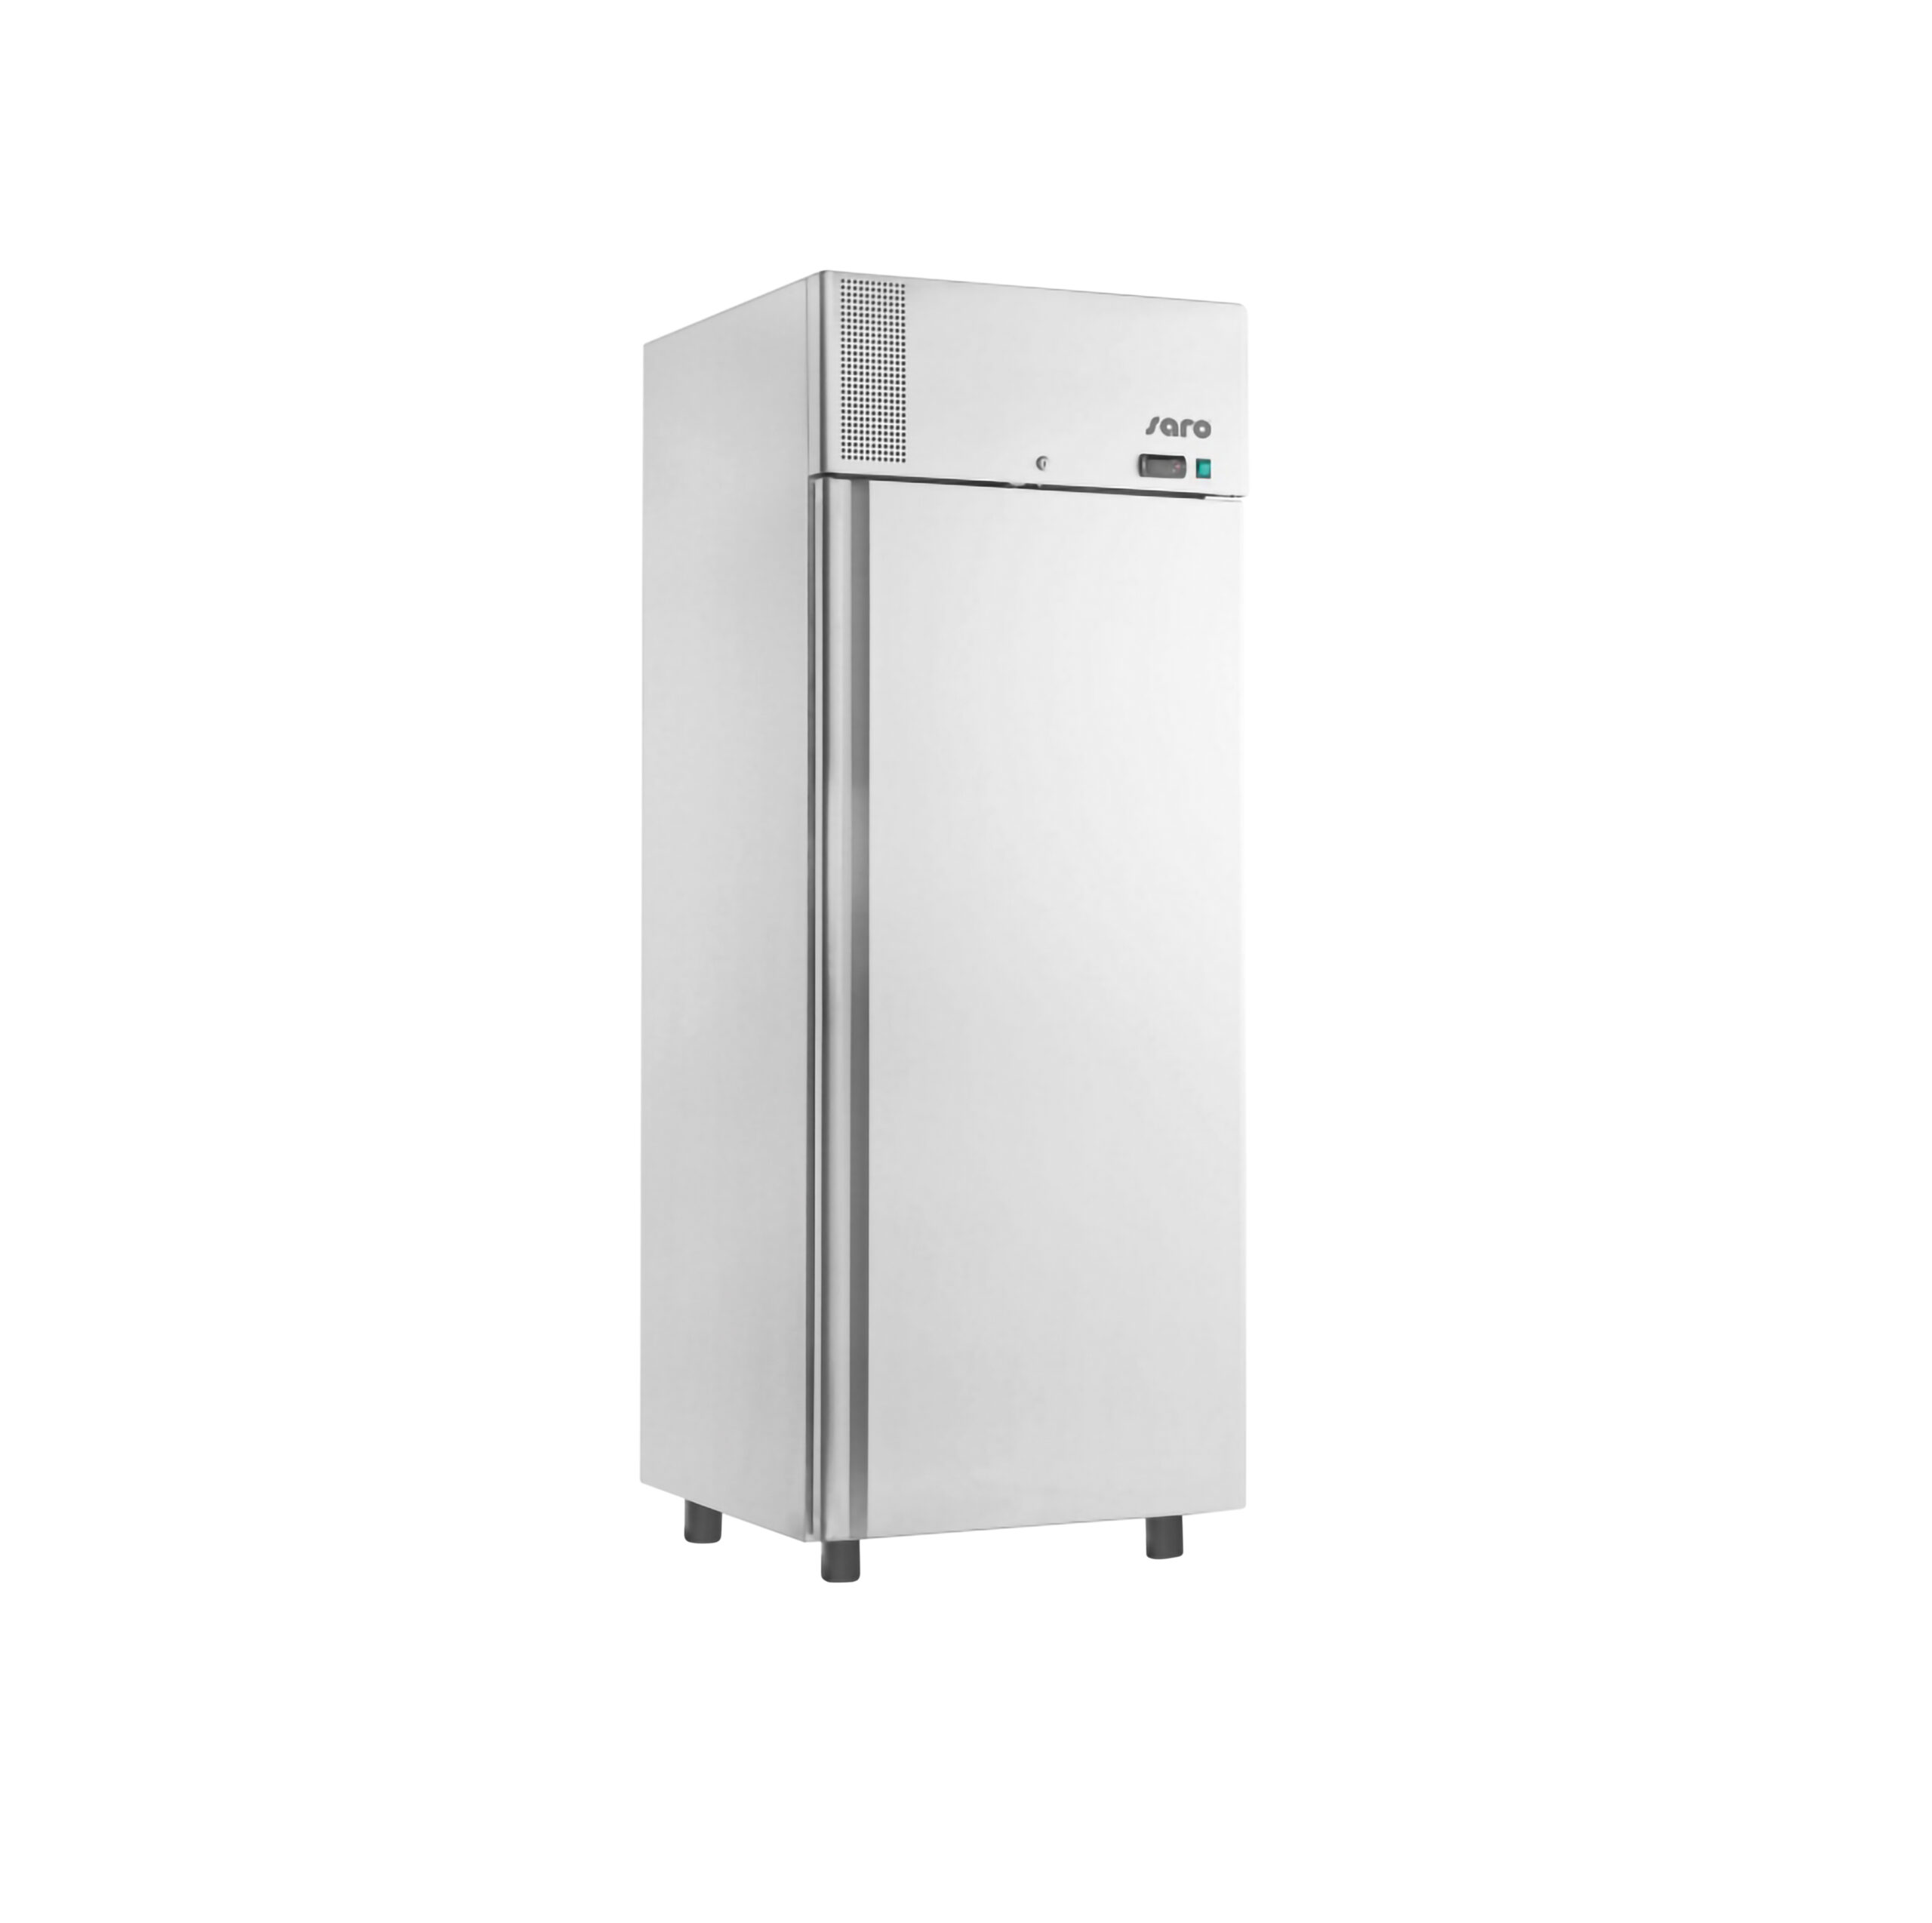 Saro koelkast C700 ventilator koeling